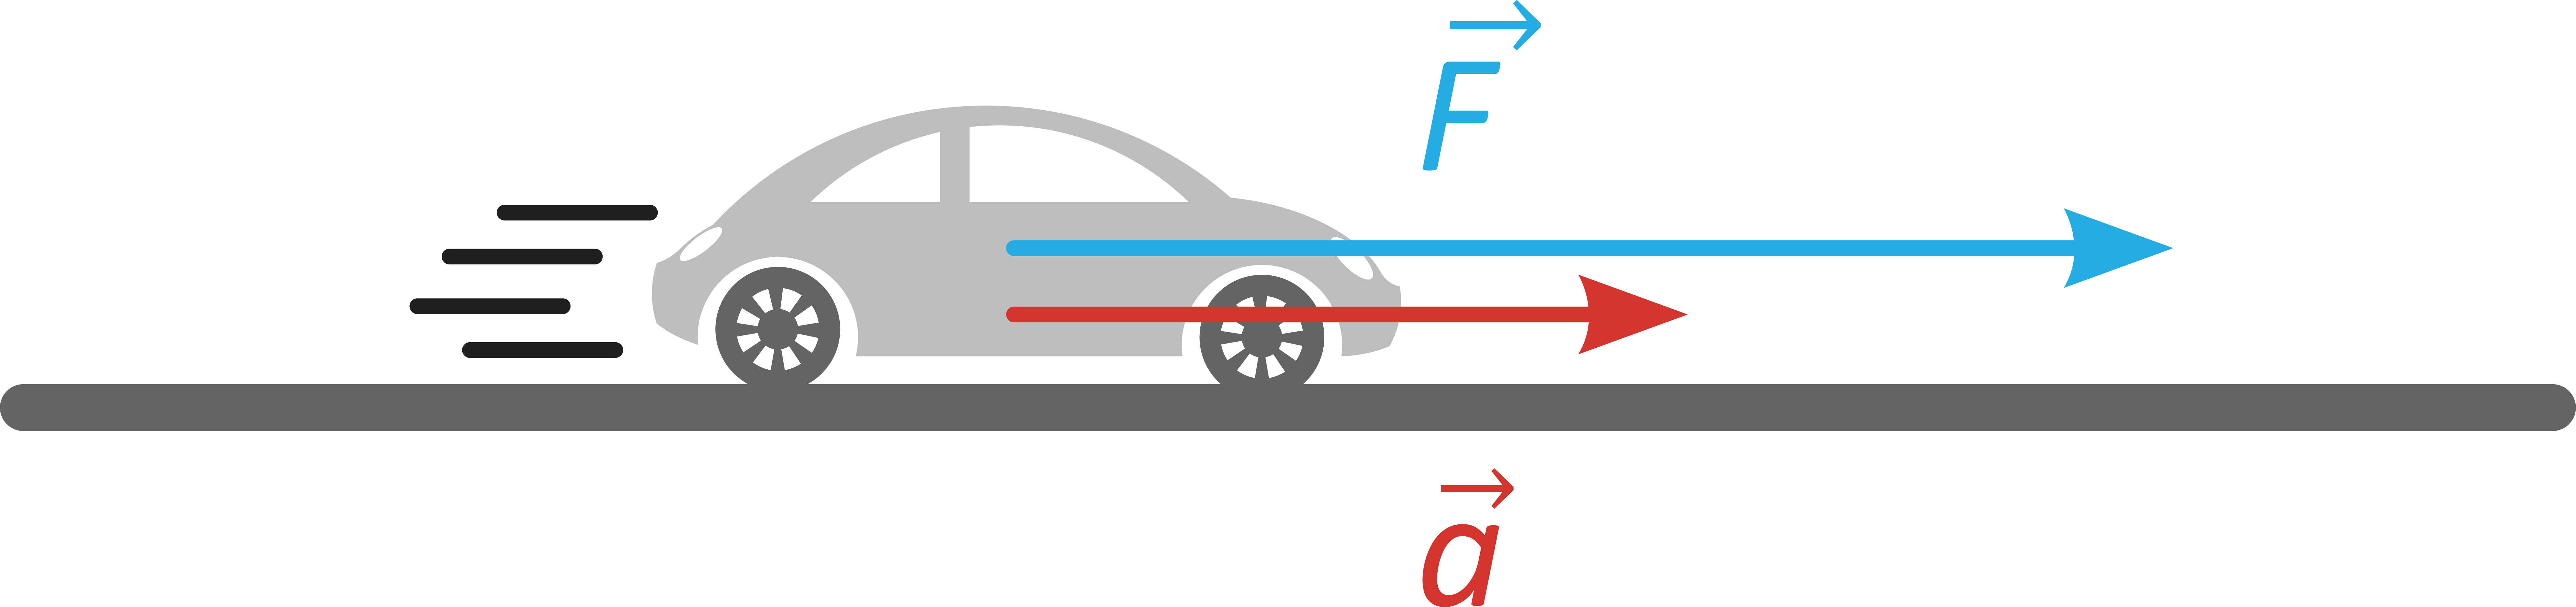 Electric vehicle physics-based range modelling